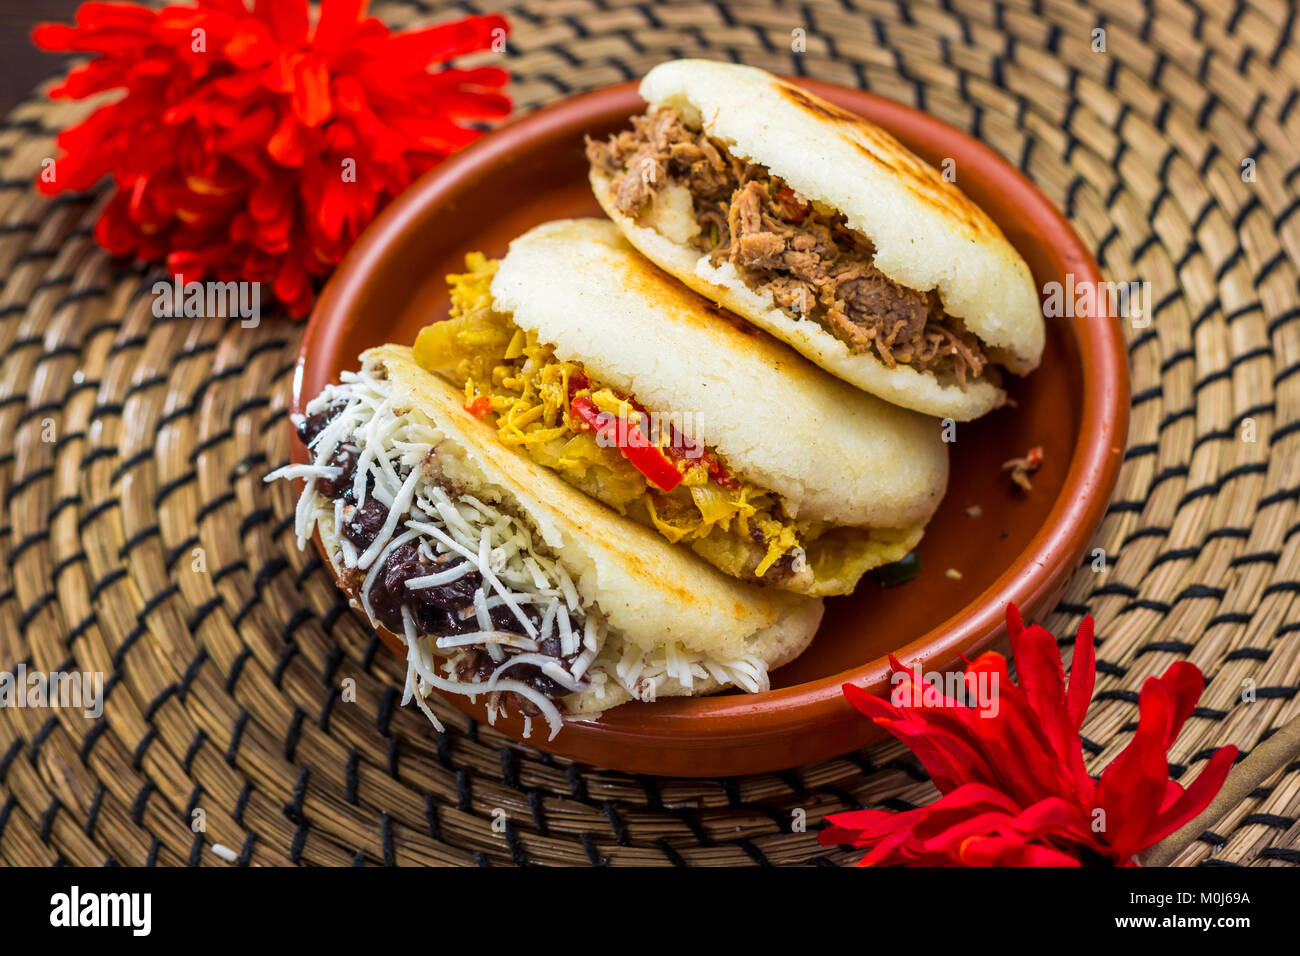 Venezolanische typisches Essen, Arepa Stockfotografie - Alamy